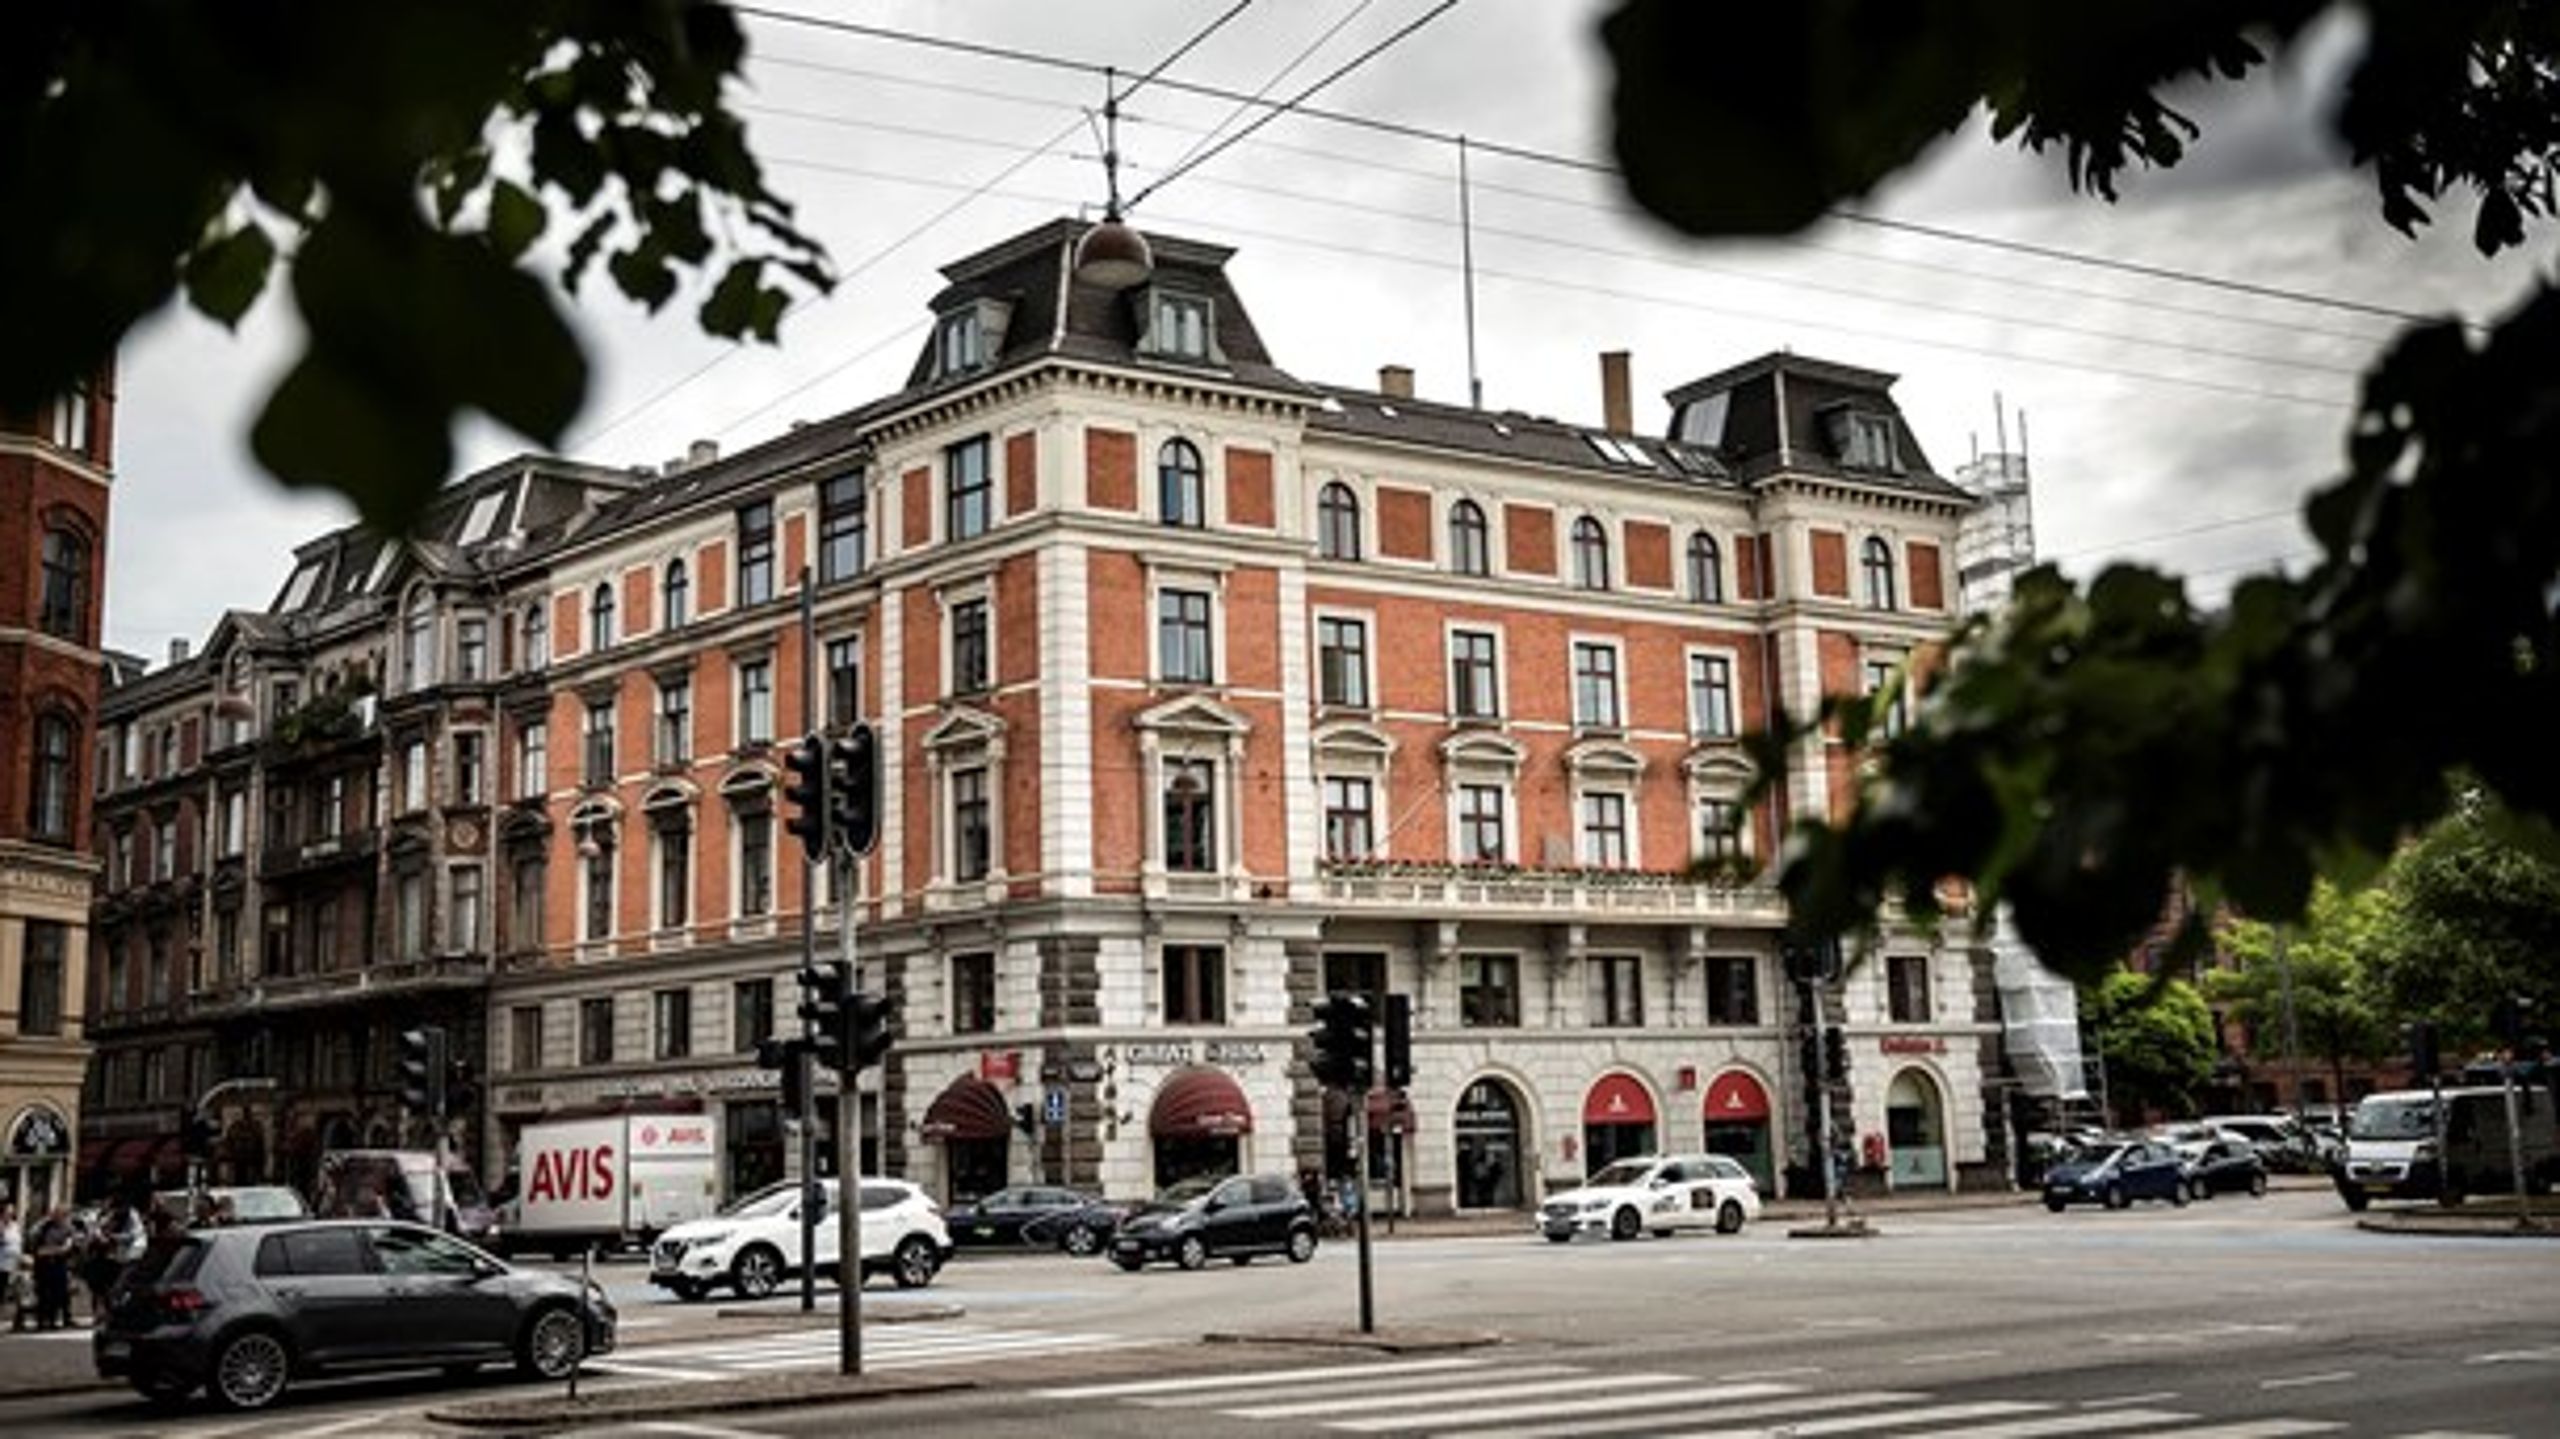 Holckenhus i indre København er en af de ejendomme, som er opkøbt af den amerikanske kapitalfond Blackstone og nu bliver renoveret til beboernes frustration.